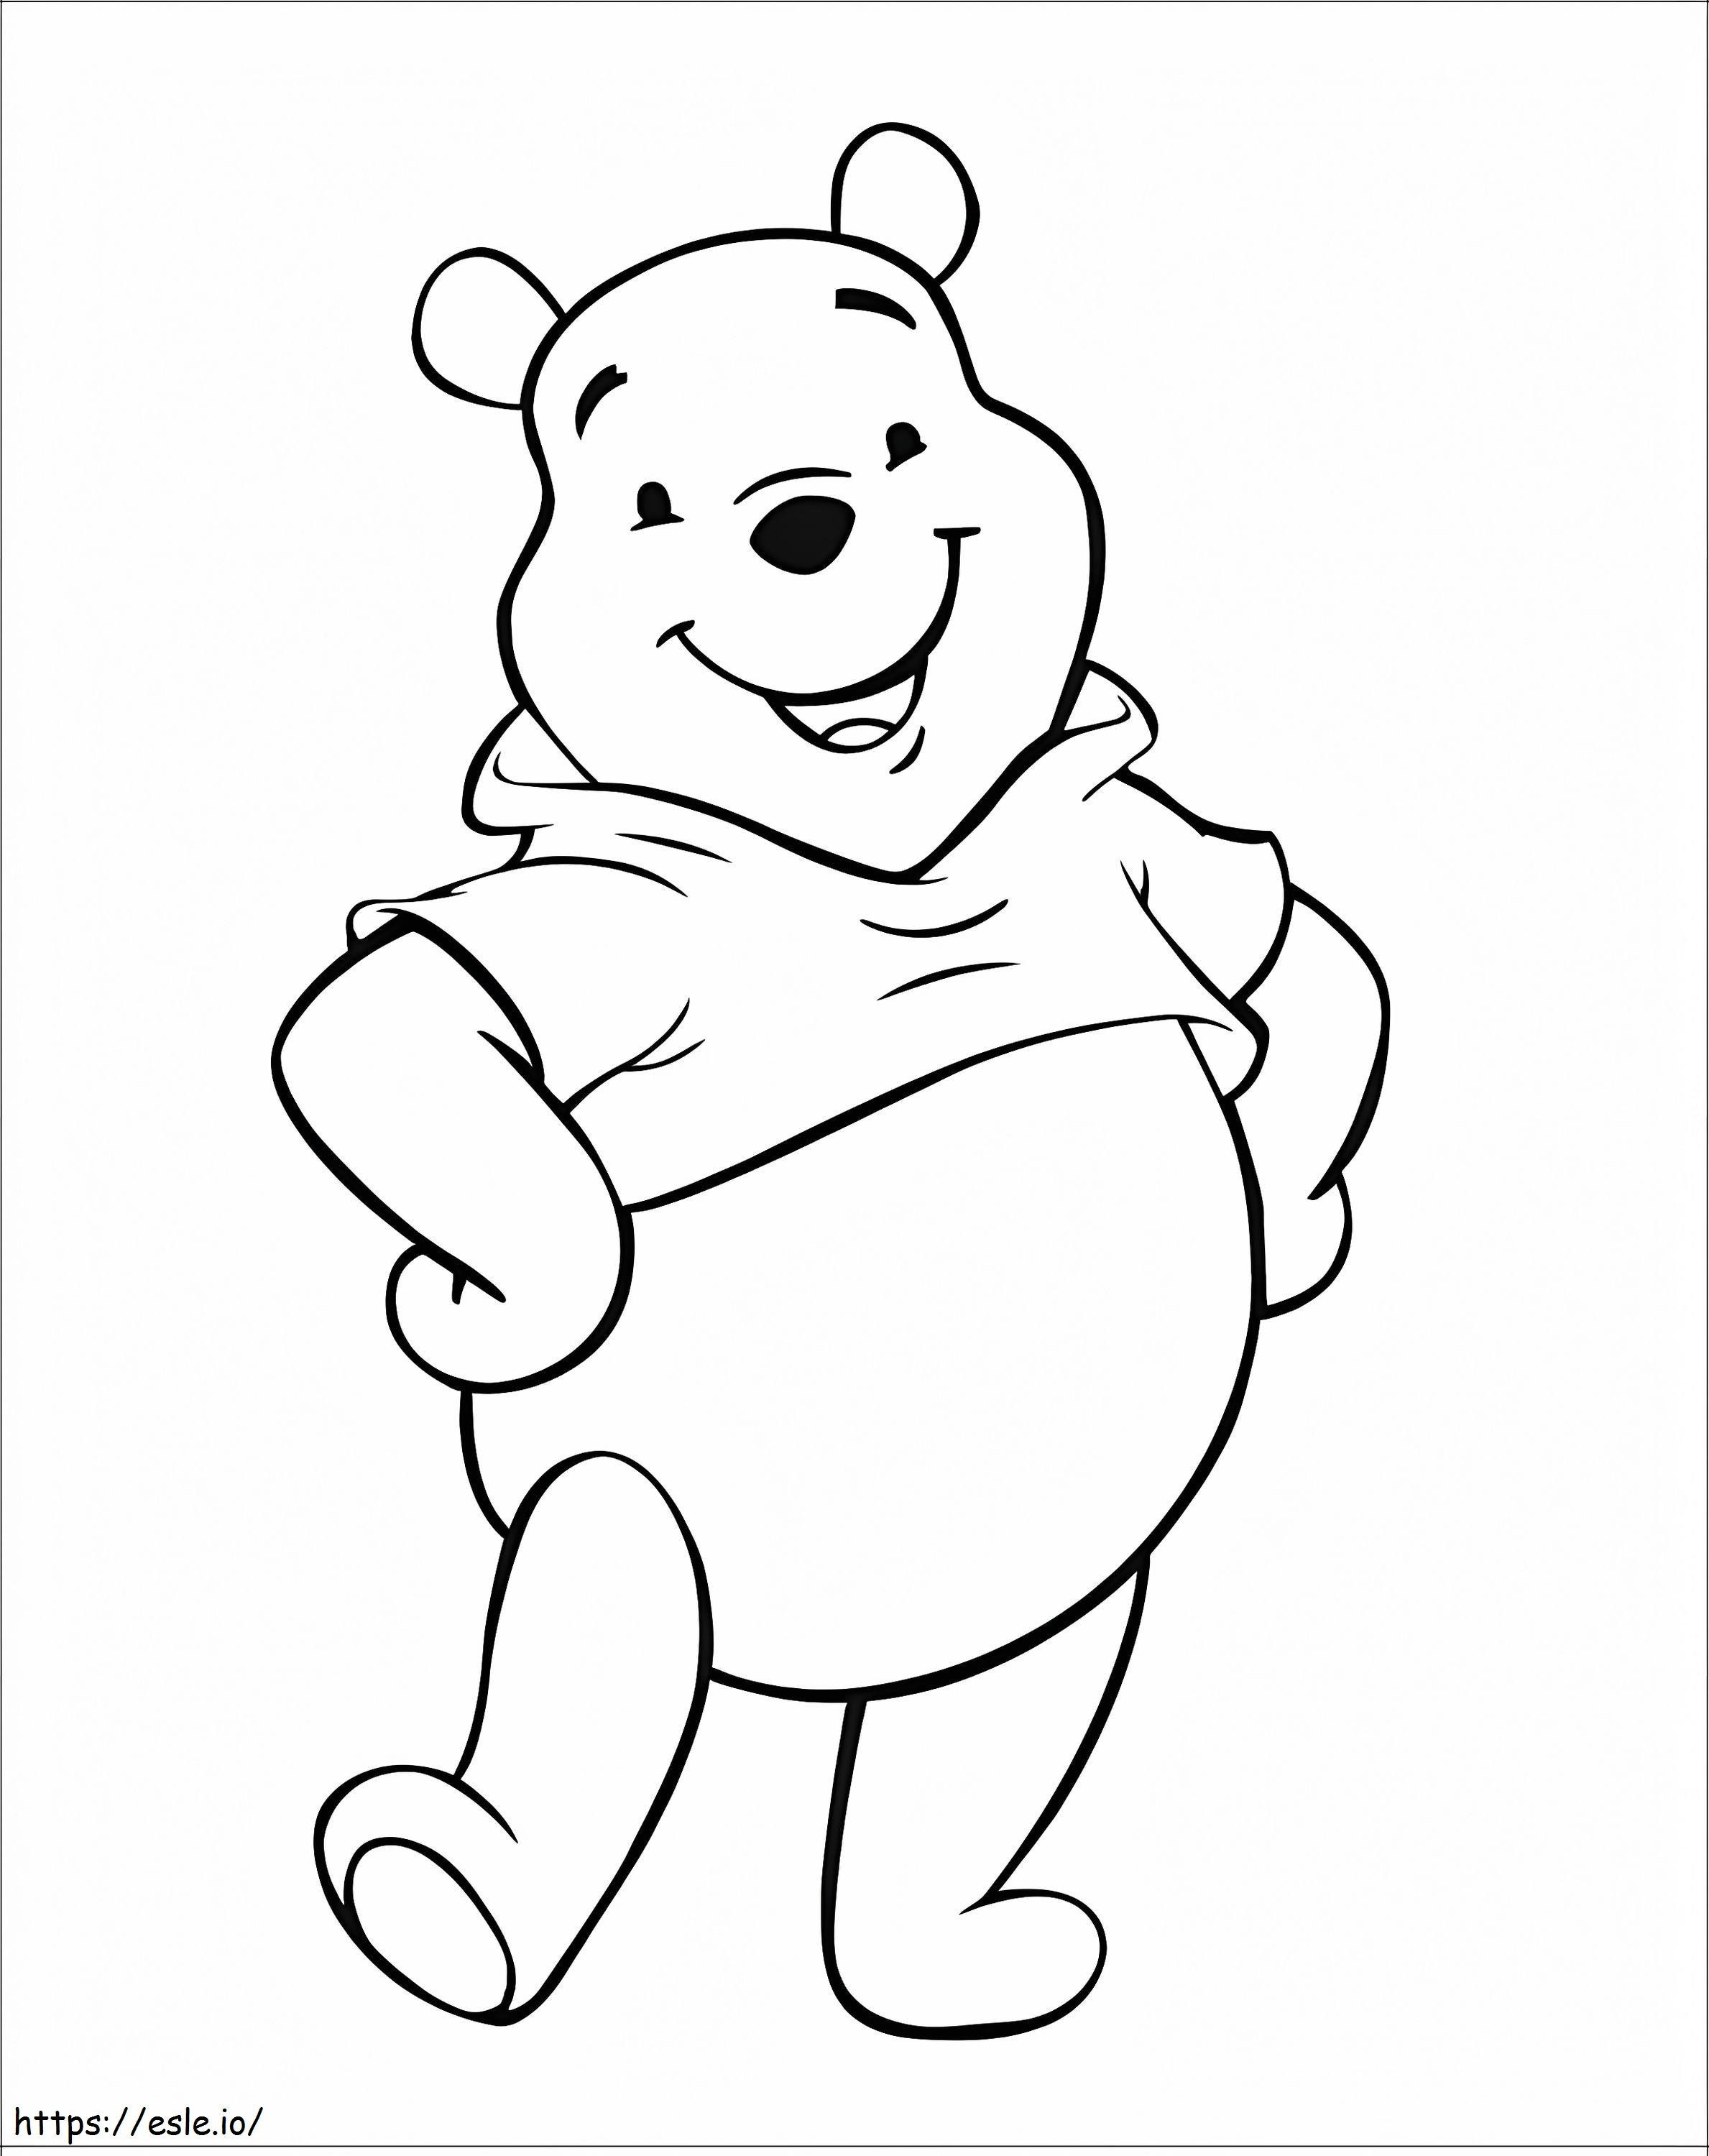 Básico do Ursinho Pooh para colorir